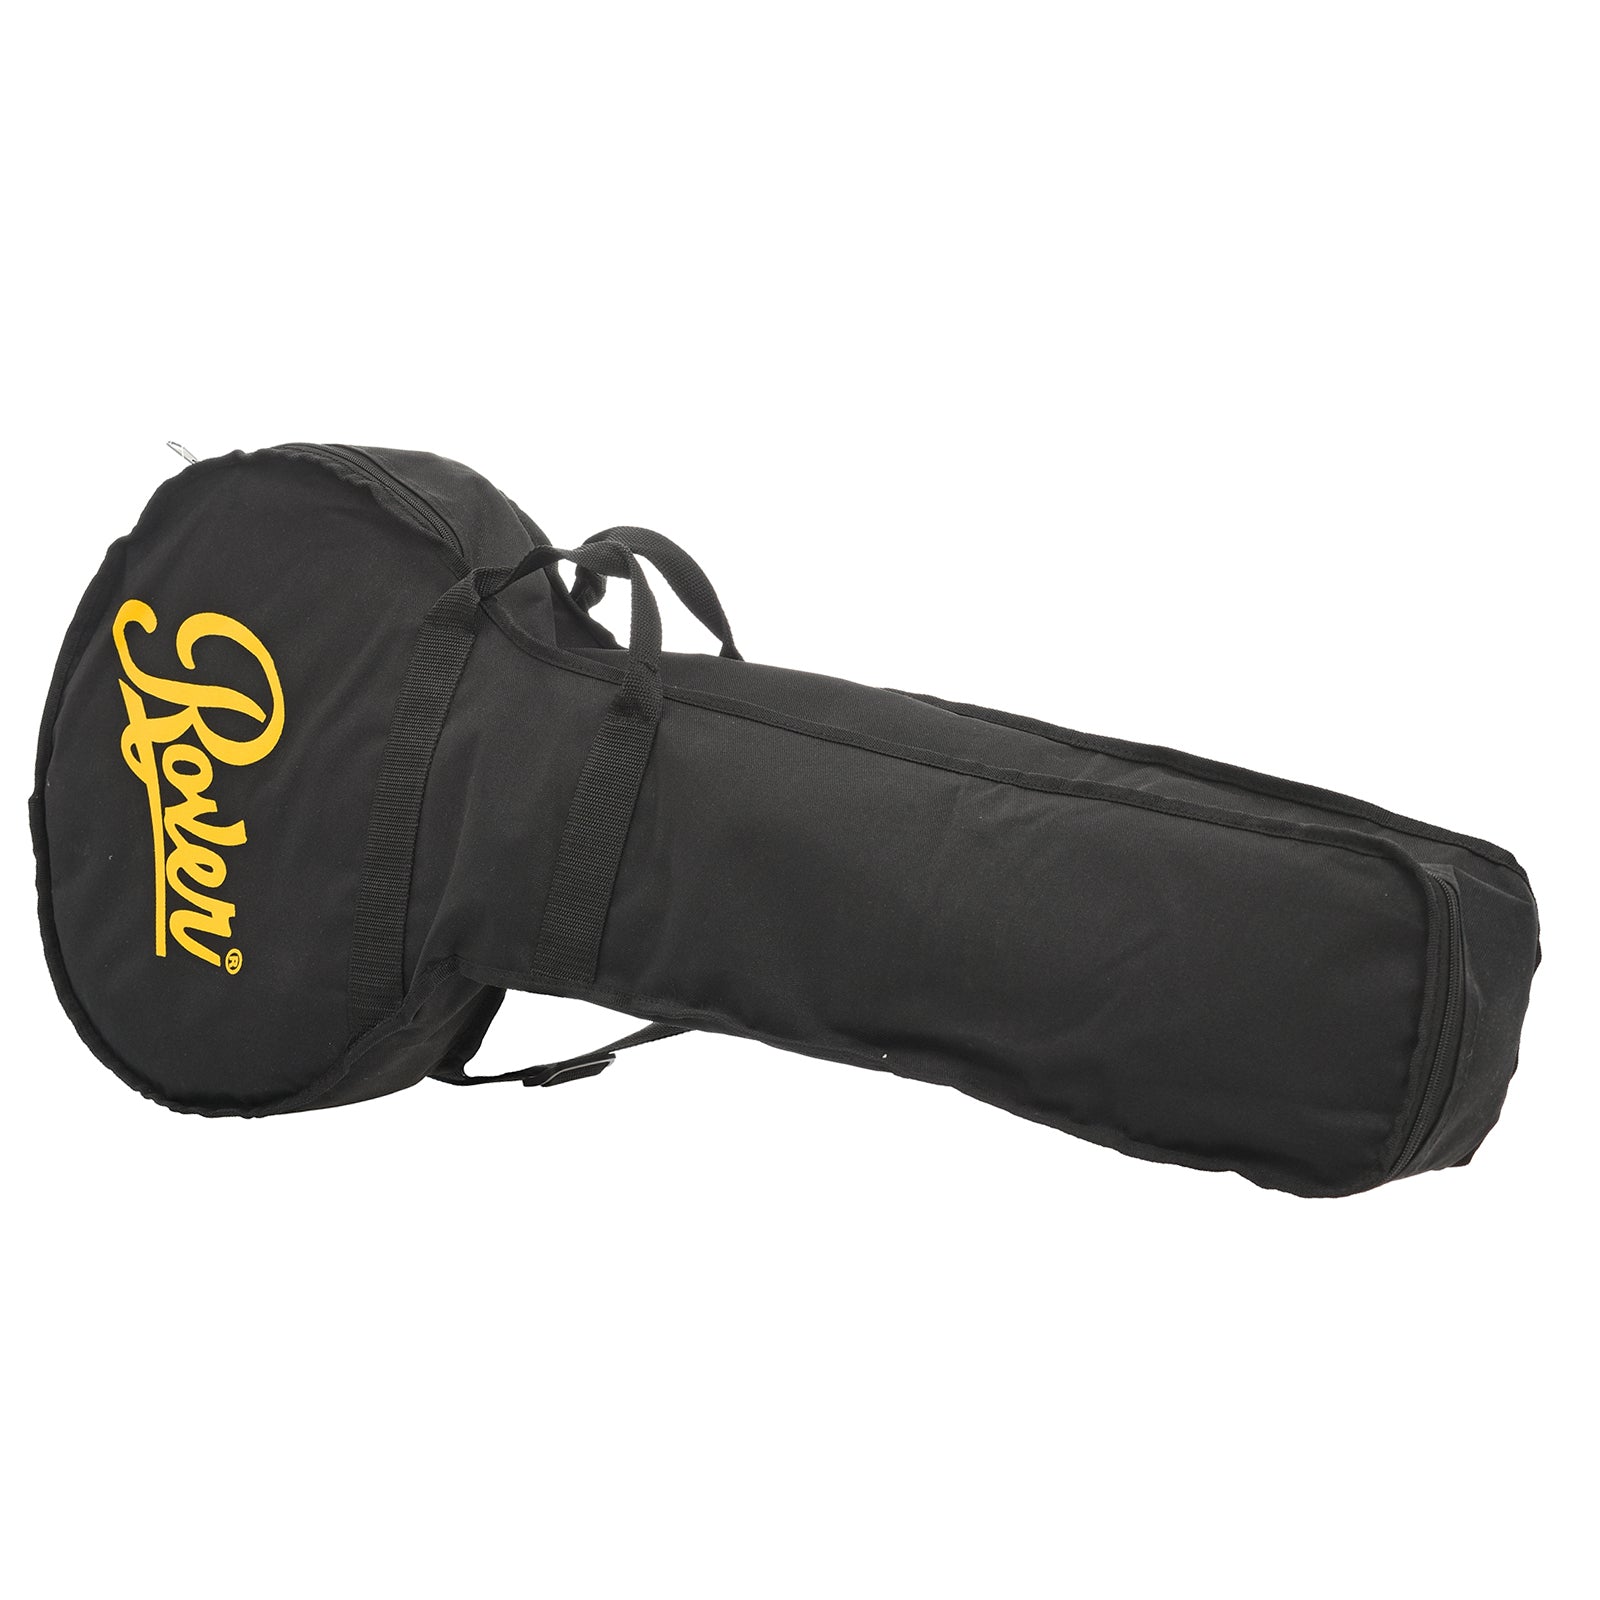 Gig bag for Rover RB-20 Open Back Banjo (2019)